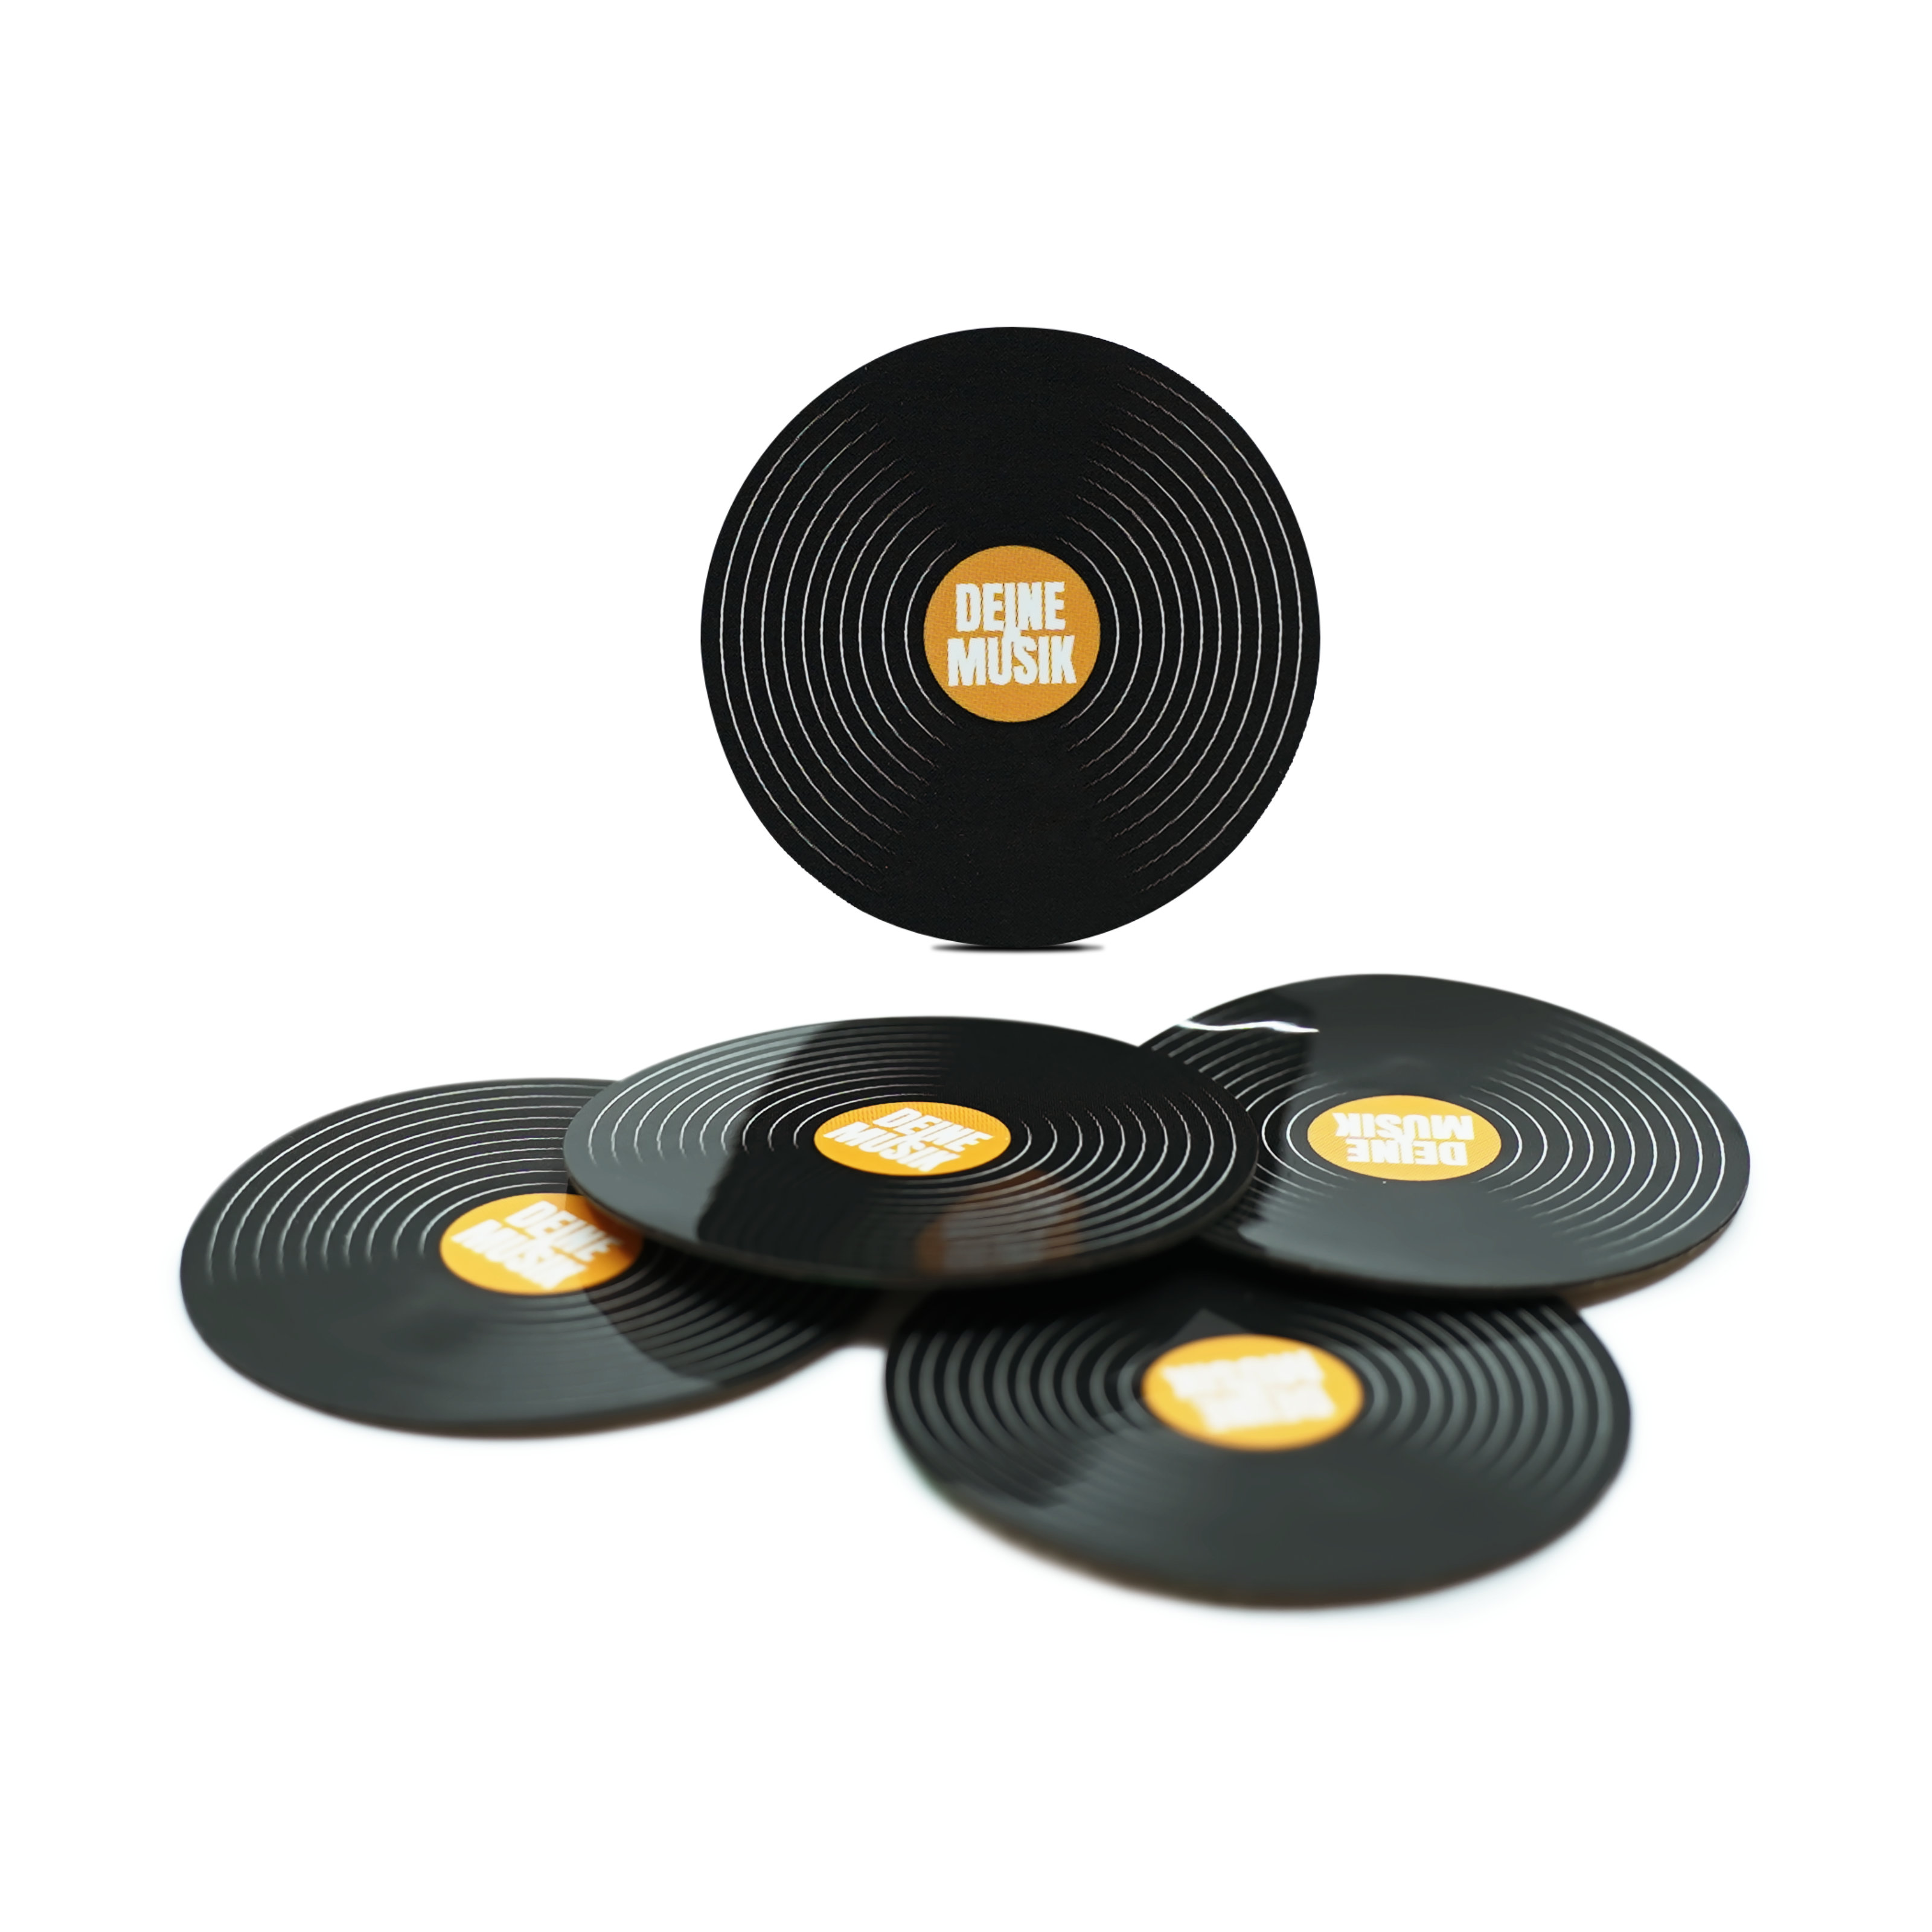  NFC Vibes Schallplatte - Digitaler Musik-Sticker - PET - 38 mm - schwarz - deutsches Label